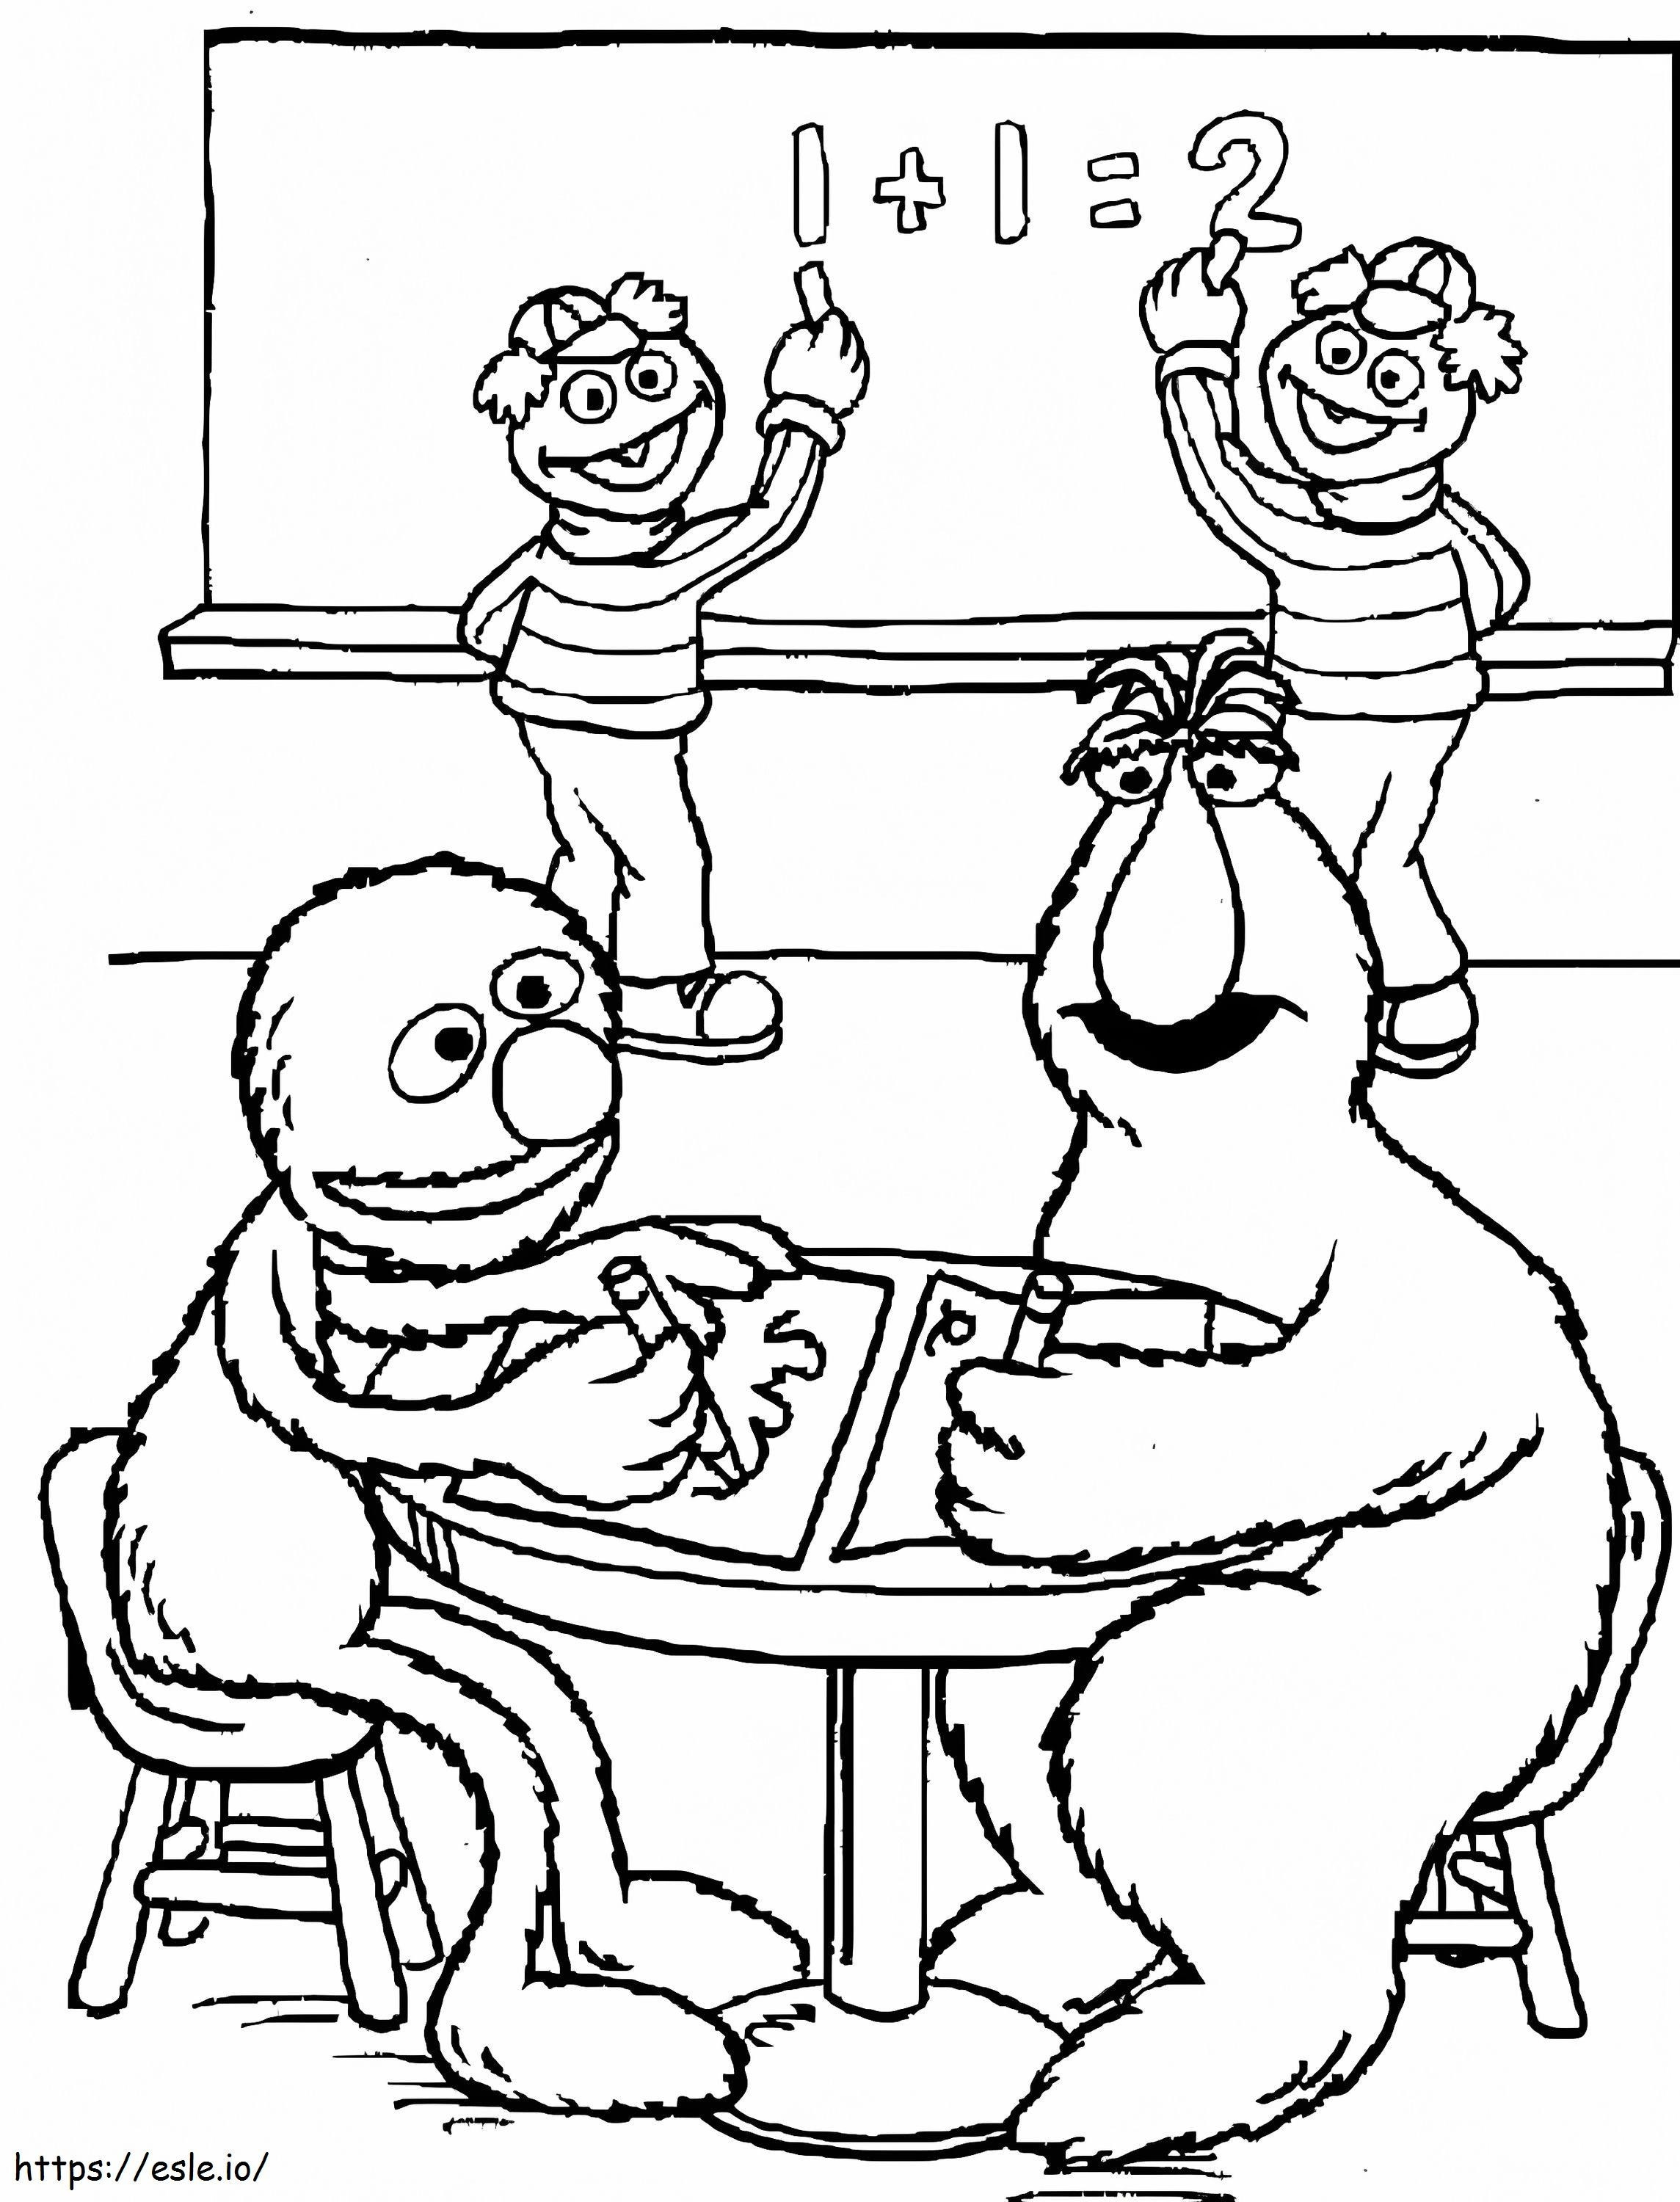 Grover în clasă de colorat